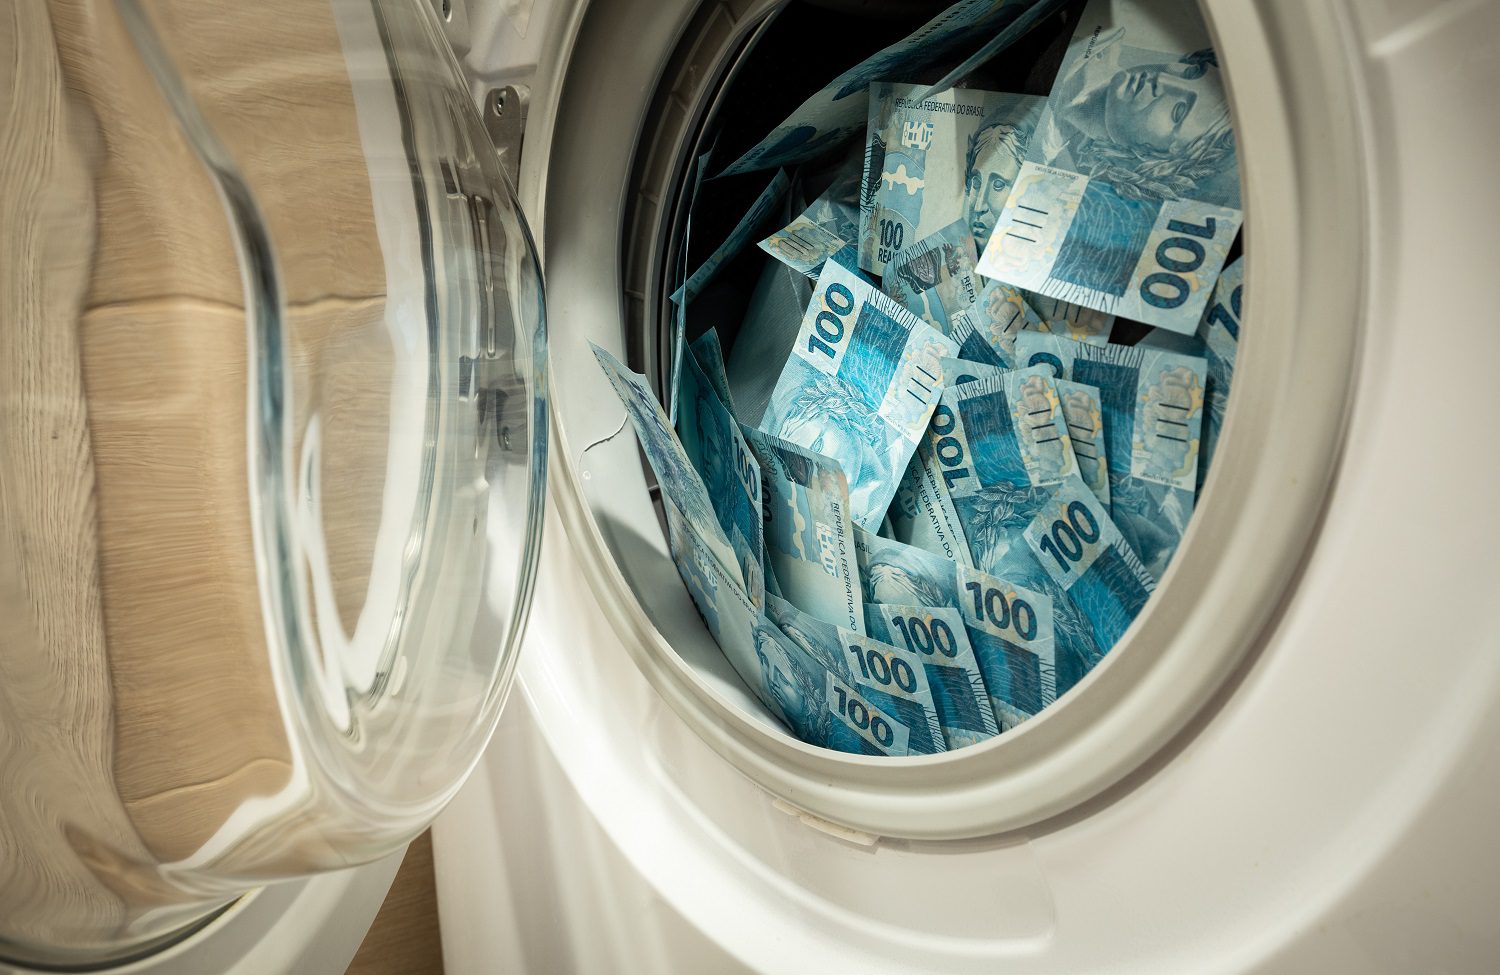 Billetes brasileños puestos en una lavadora.